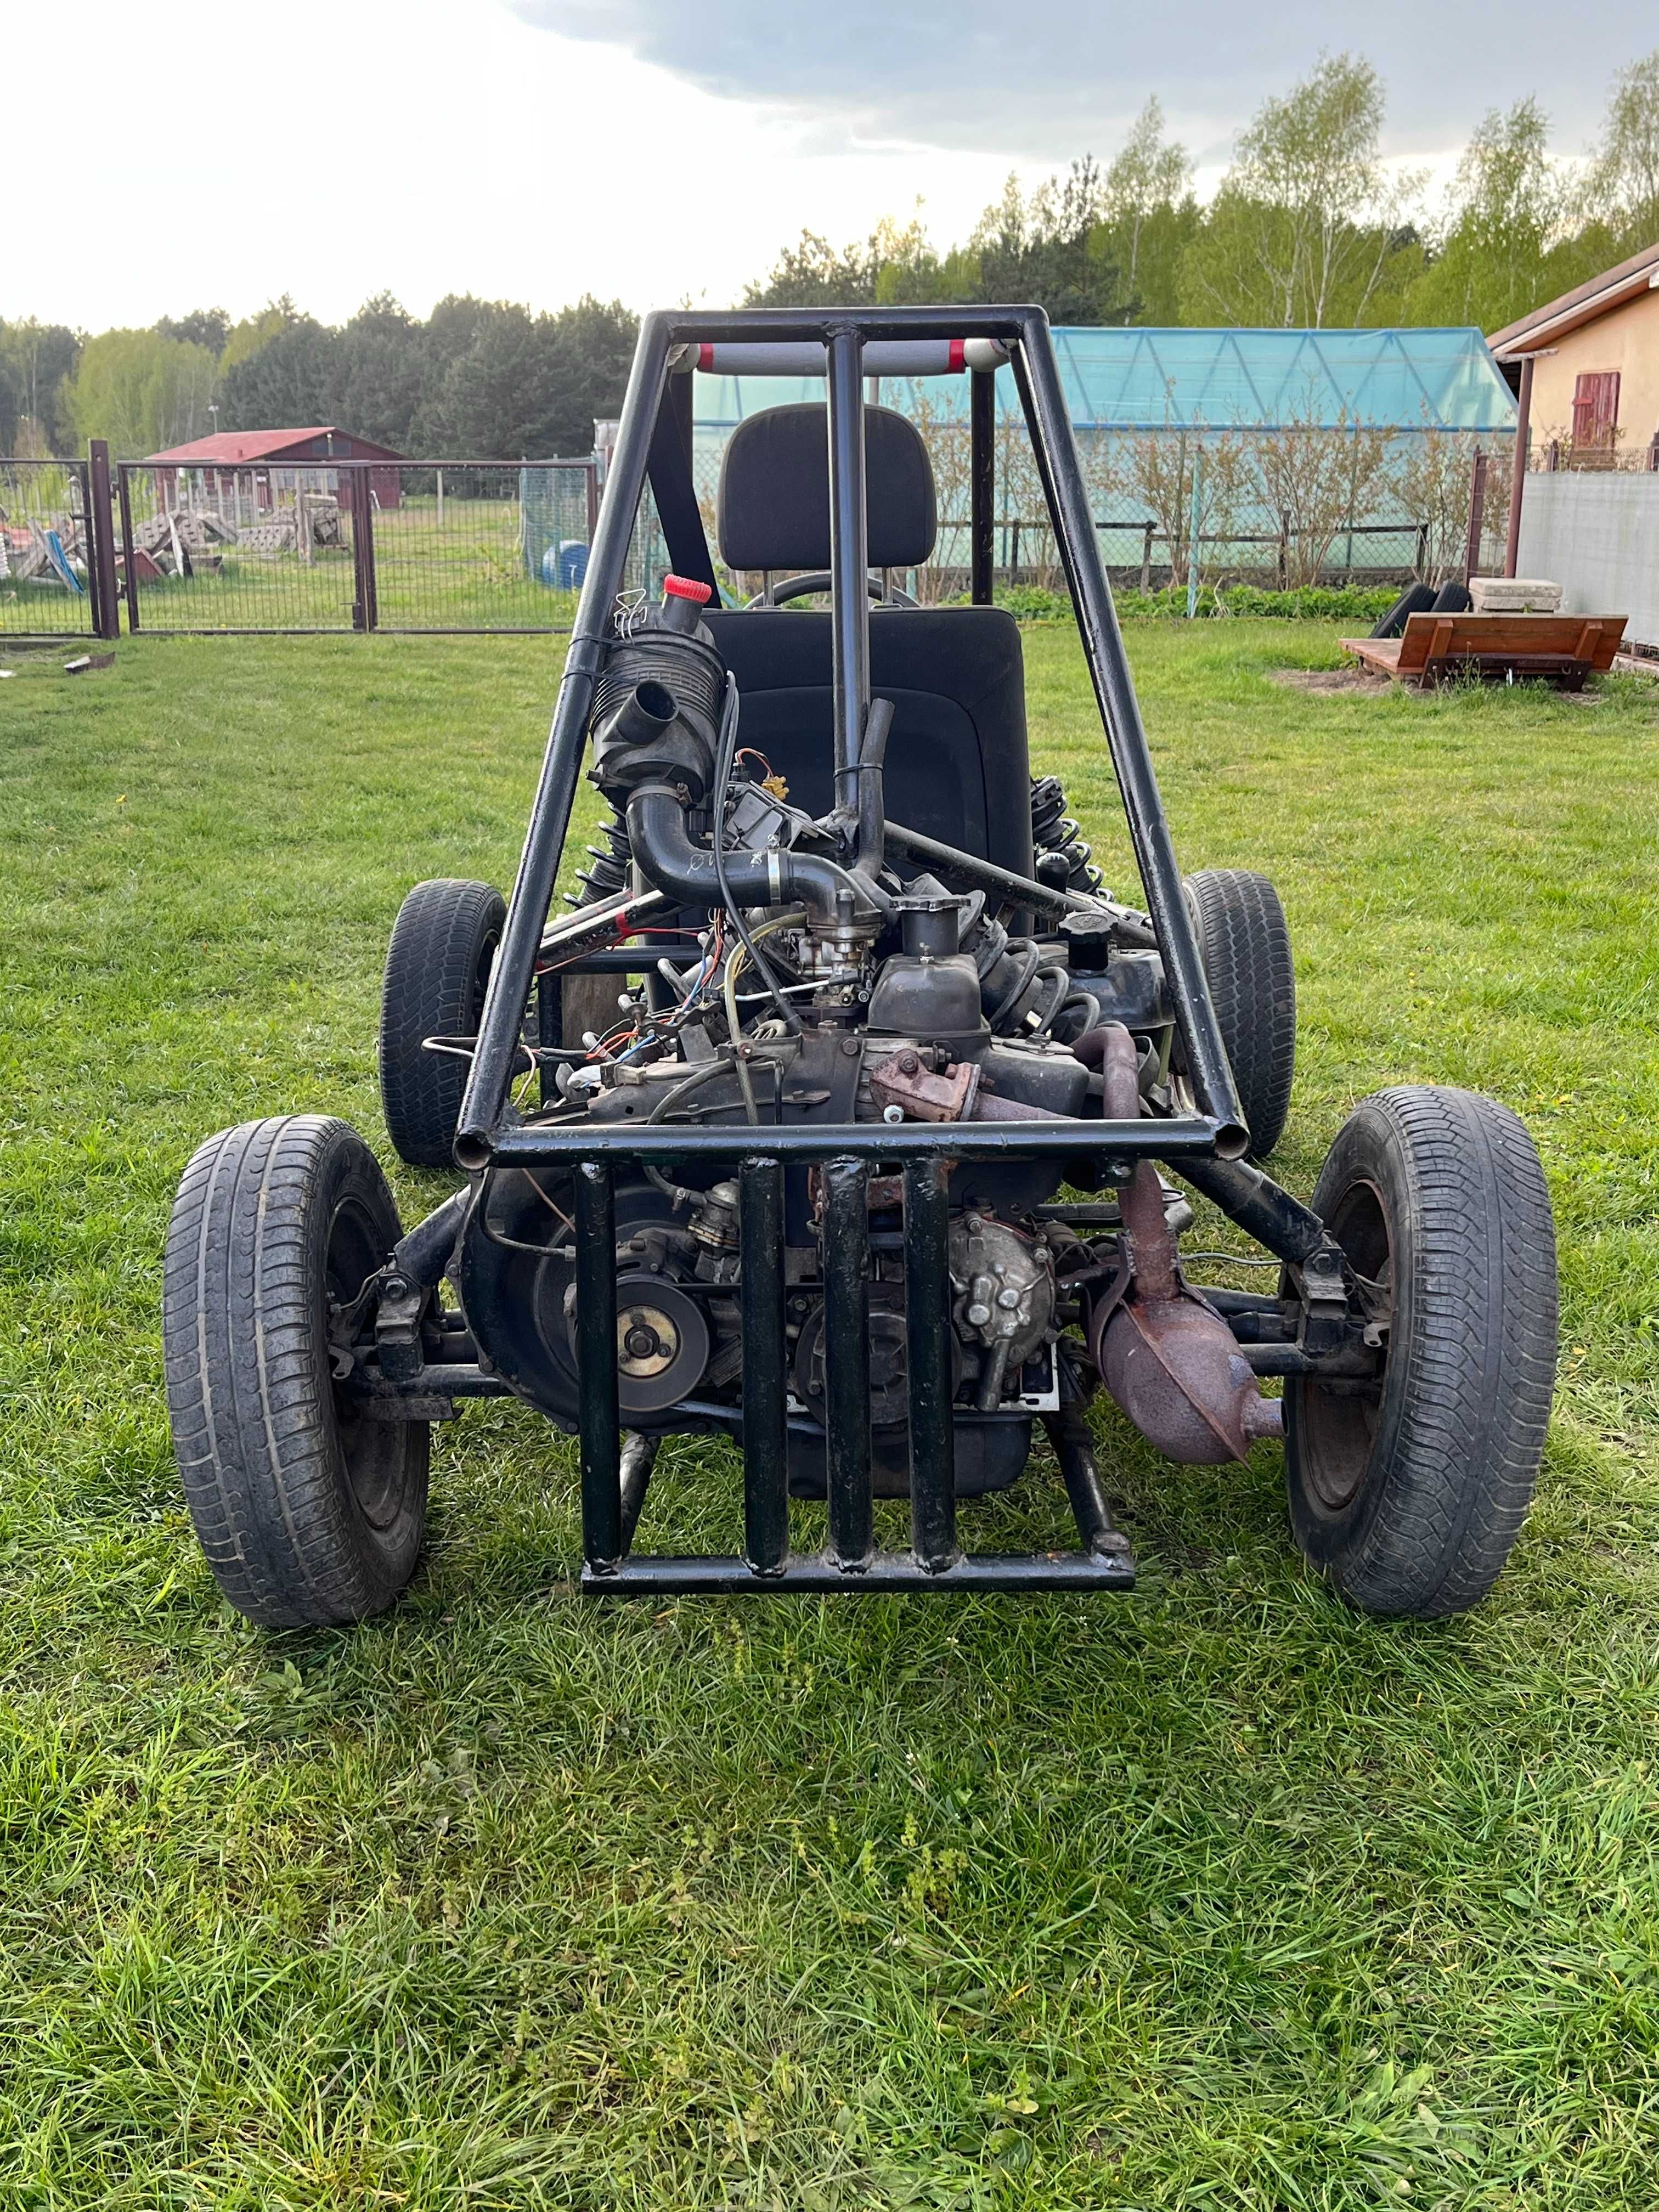 Buggy na bazie silnika z fiata 126p